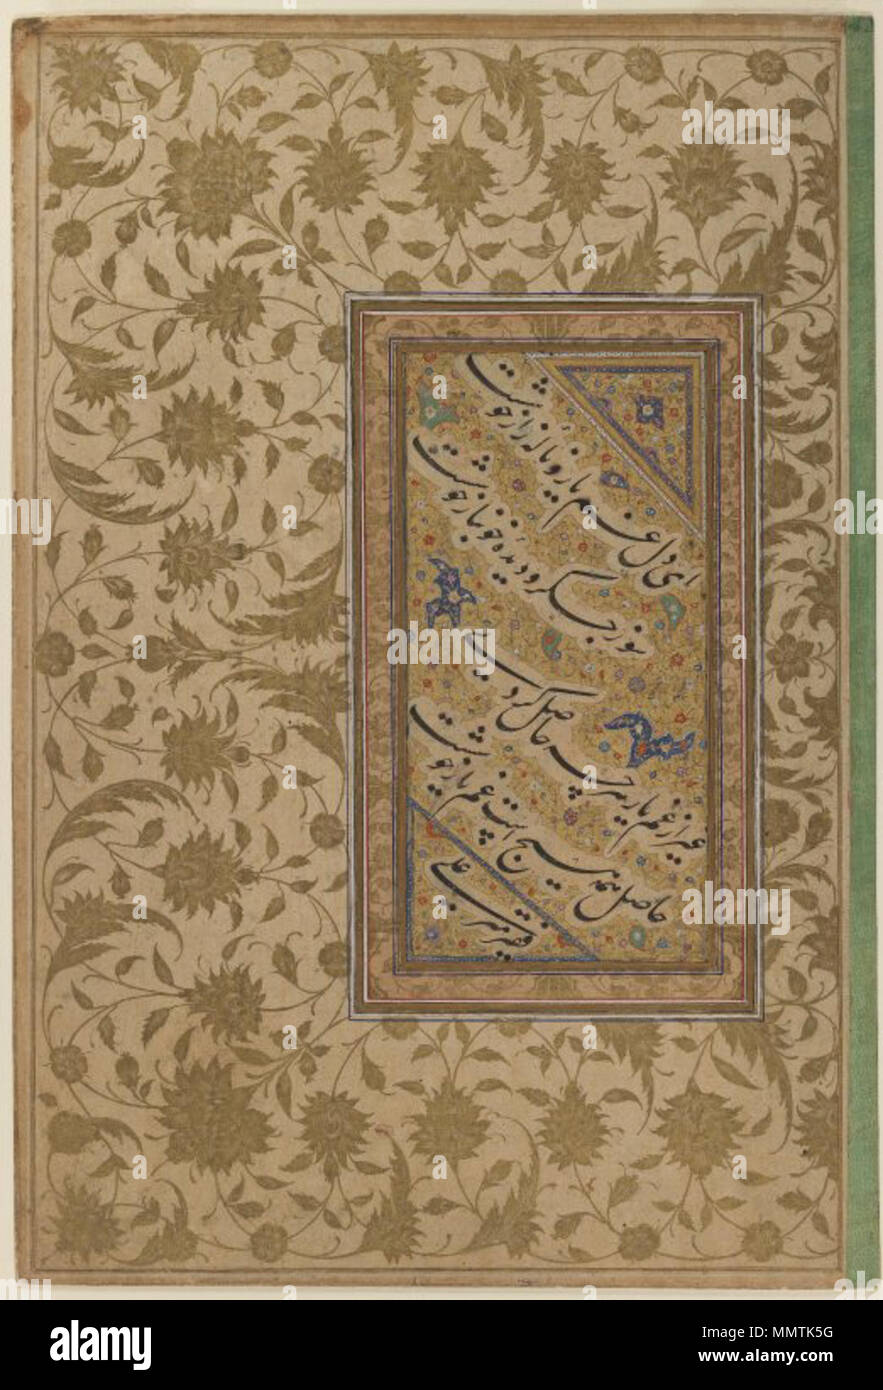 Sample of Calligraphy in Persian Nasta'liq Script. between 1500 and 1600. Brooklyn Museum - Sample of Calligraphy in Persian Nasta'liq Script Stock Photo